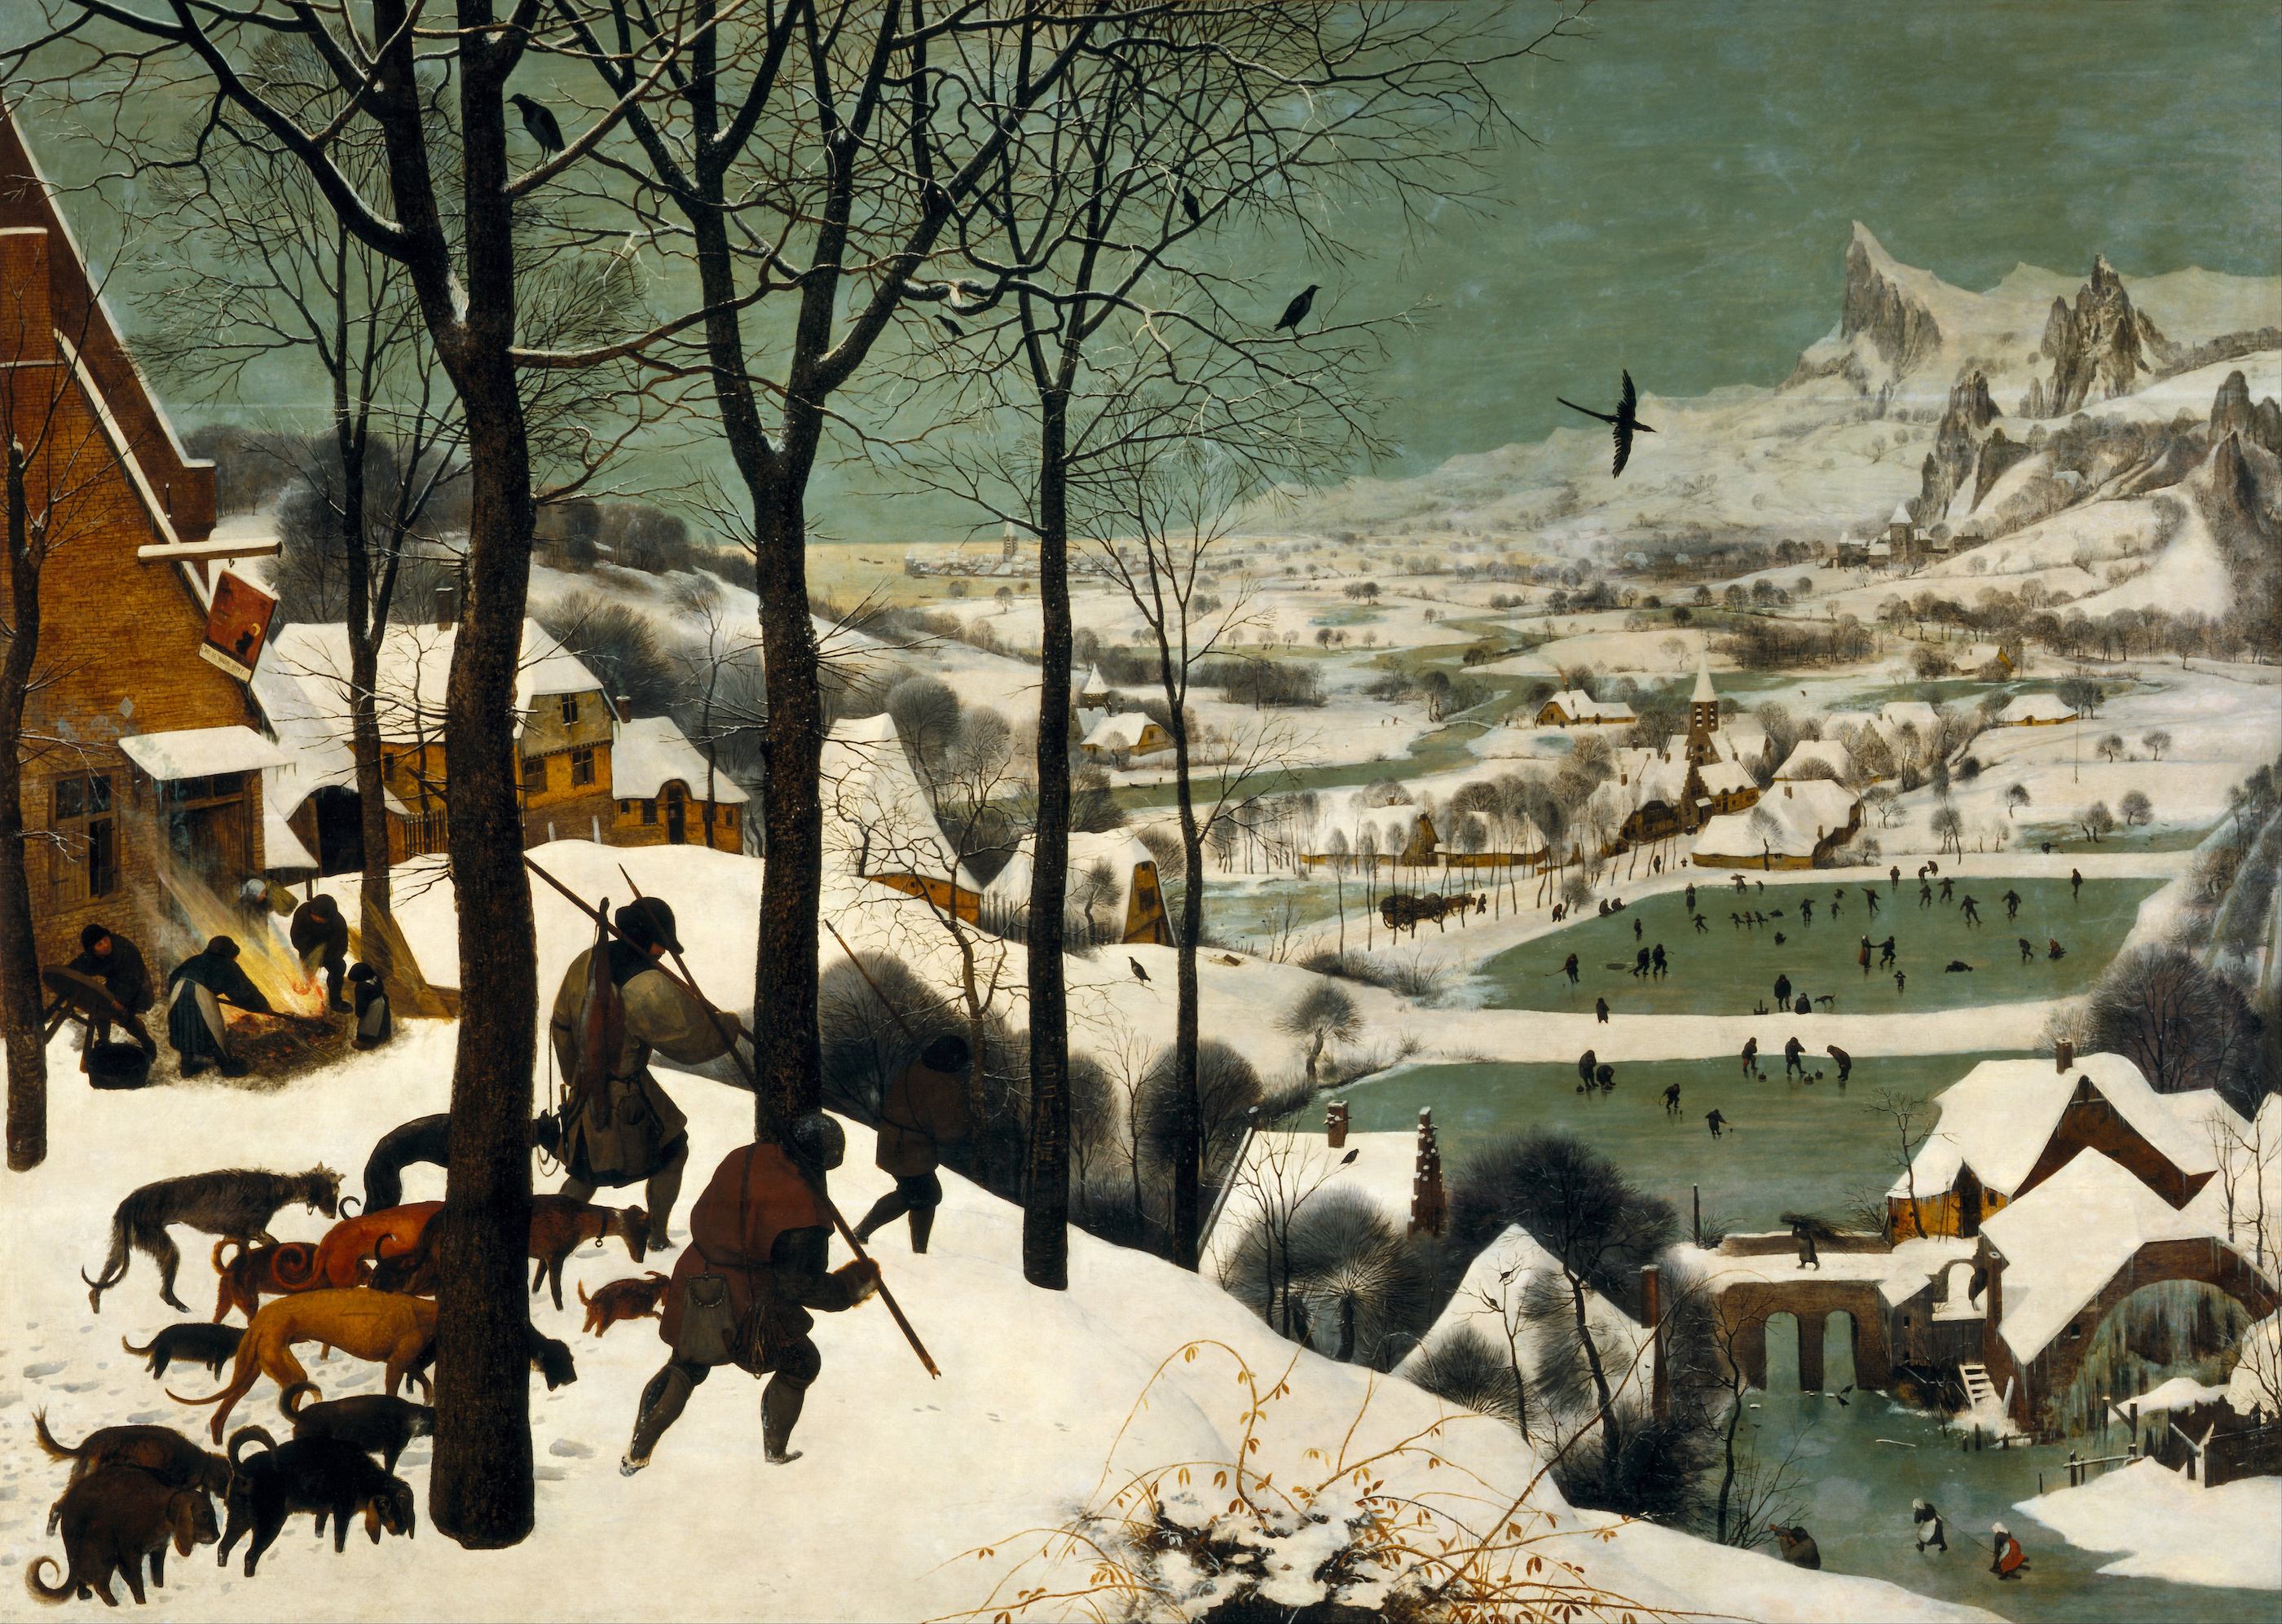 Vadászok a hóban by Pieter Bruegel the Elder - 1565 - 162 x 117 cm 